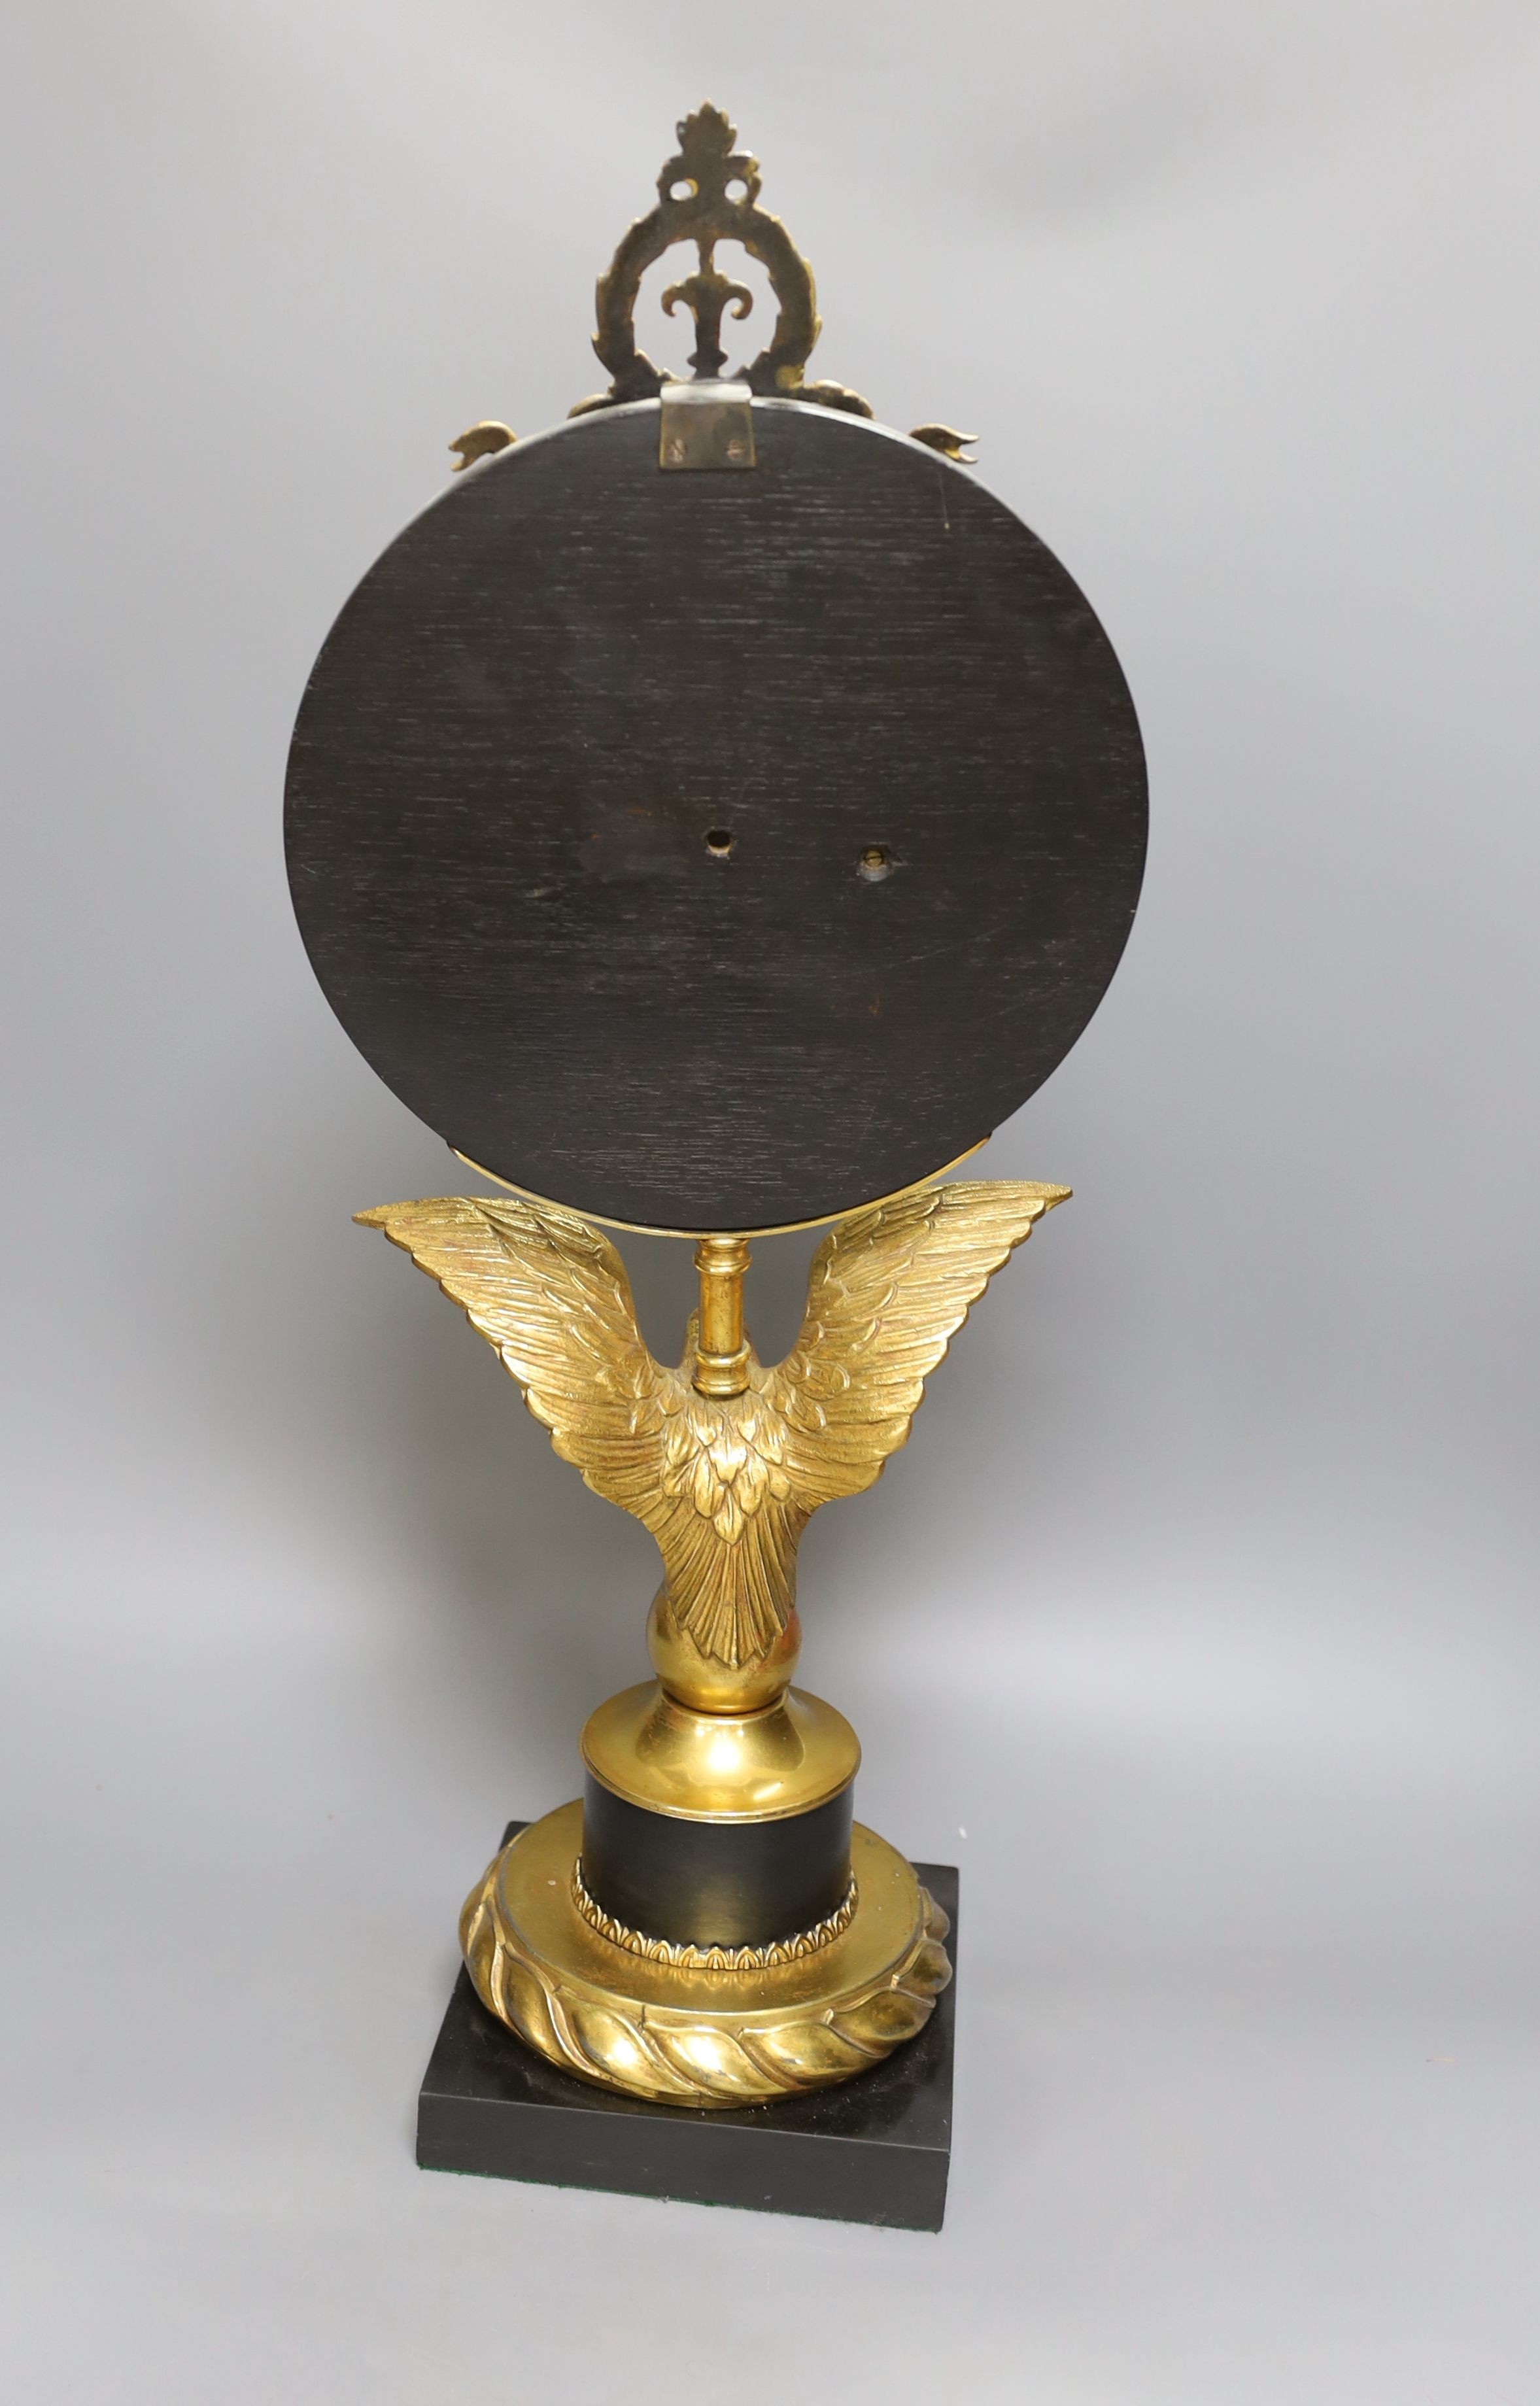 A large desk barometer on a gilt metal eagle mount - 58.5cm tall - Image 4 of 4